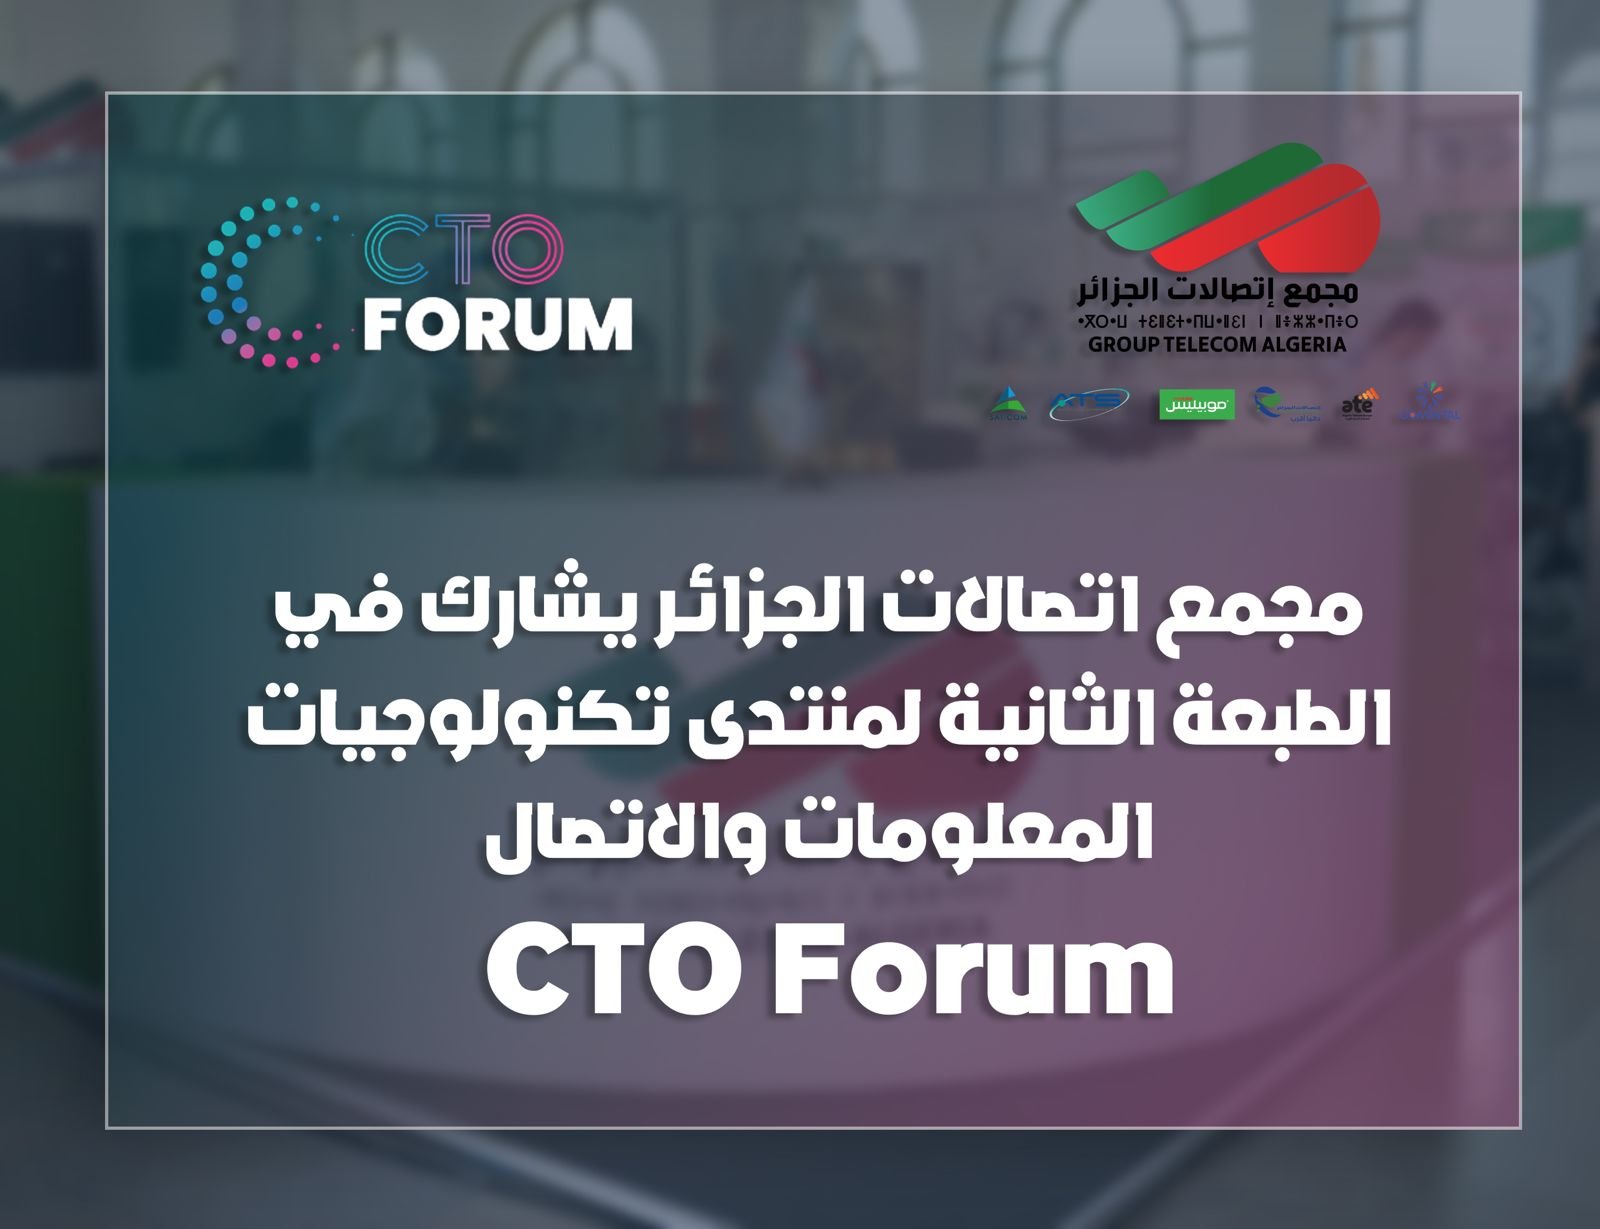 مجمع اتصالات الجزائر يشارك في منتدى تكنولوجيا المعلومات والاتصال